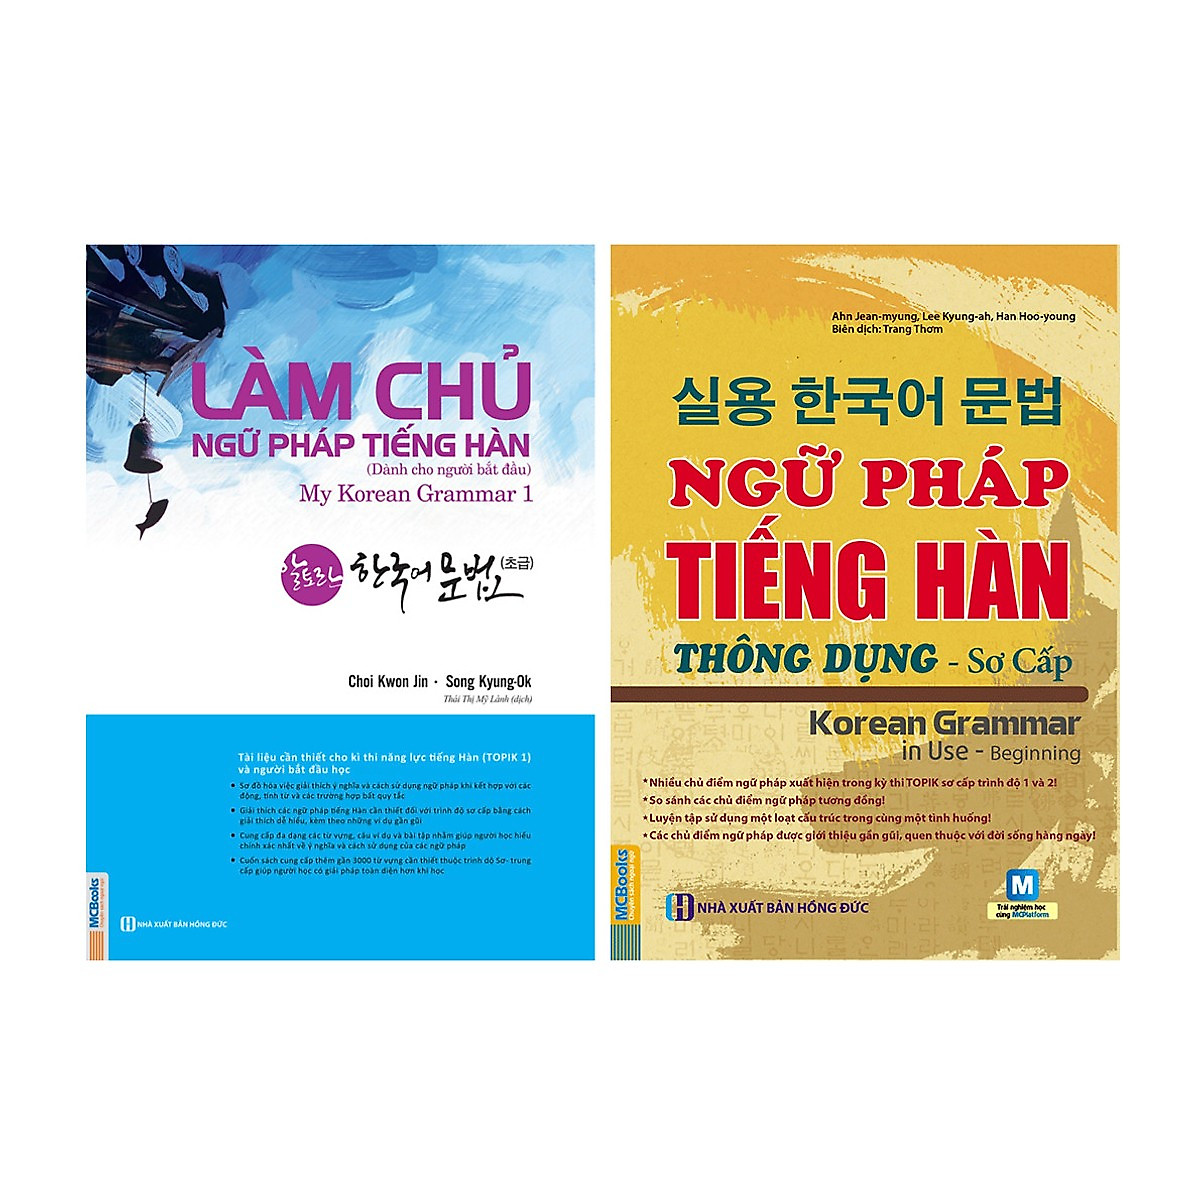 Bộ Sách Học Tiếng Hàn Cơ Bản: Làm Chủ Ngữ Pháp Tiếng Hàn Dành Cho Người Mới Bắt Đầu + Ngữ Pháp Tiếng Hàn Thông Dụng Sơ Cấp (Học Kèm App MCBooks) (Quà Tặng: Bút Blue Đáng Yêu)